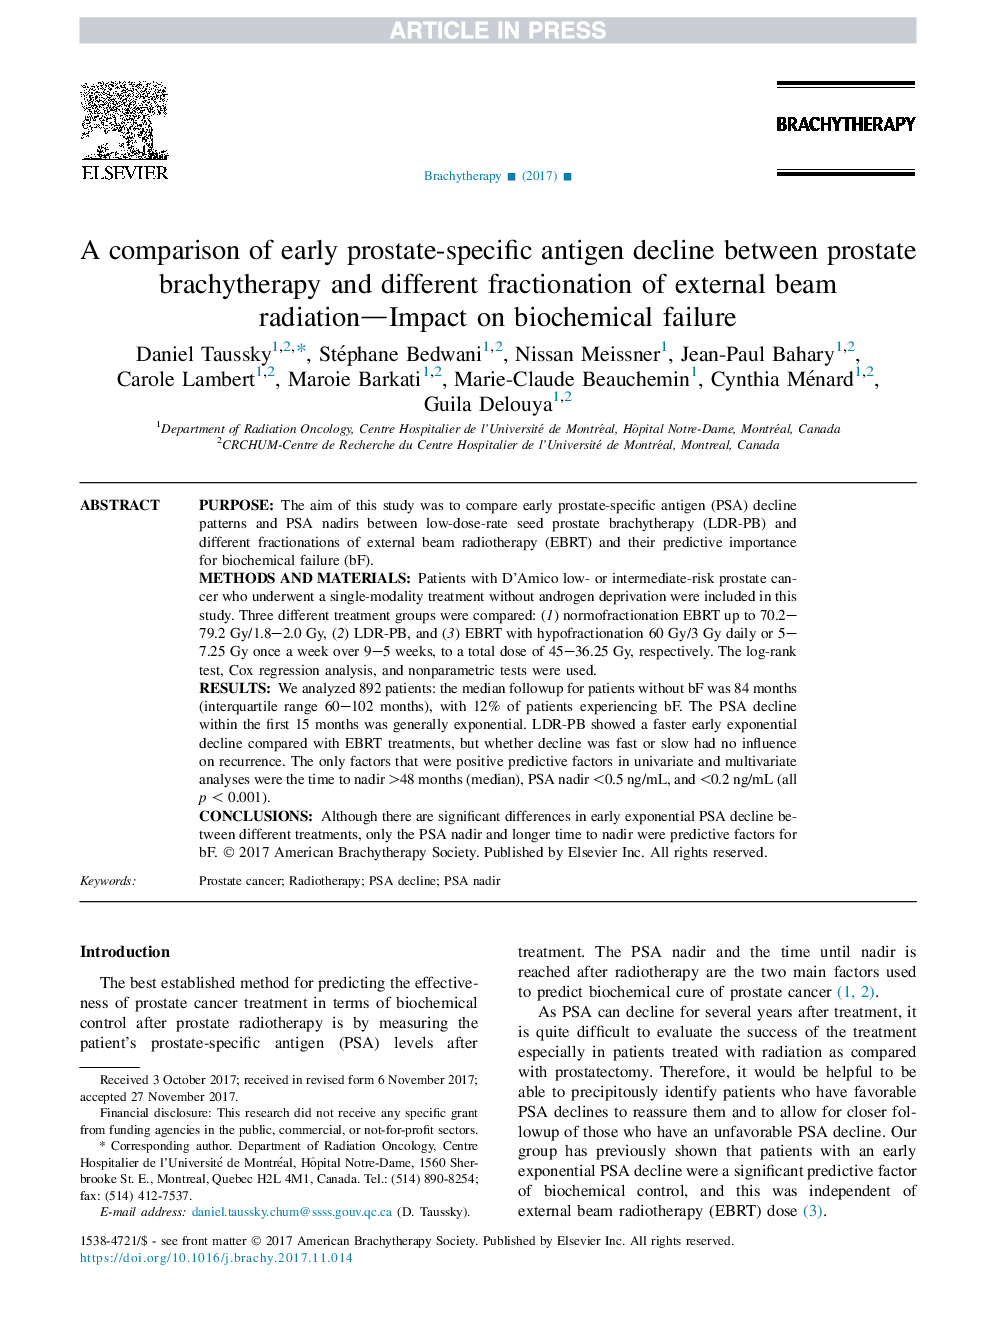 مقایسه مقادیر اولیه آنتیژن پروستات خاص بین پروتئین براکیتریپیک و تقسیم بندی متفاوت پرتوهای خارجی - تاثیر بر شکست بیوشیمیایی 